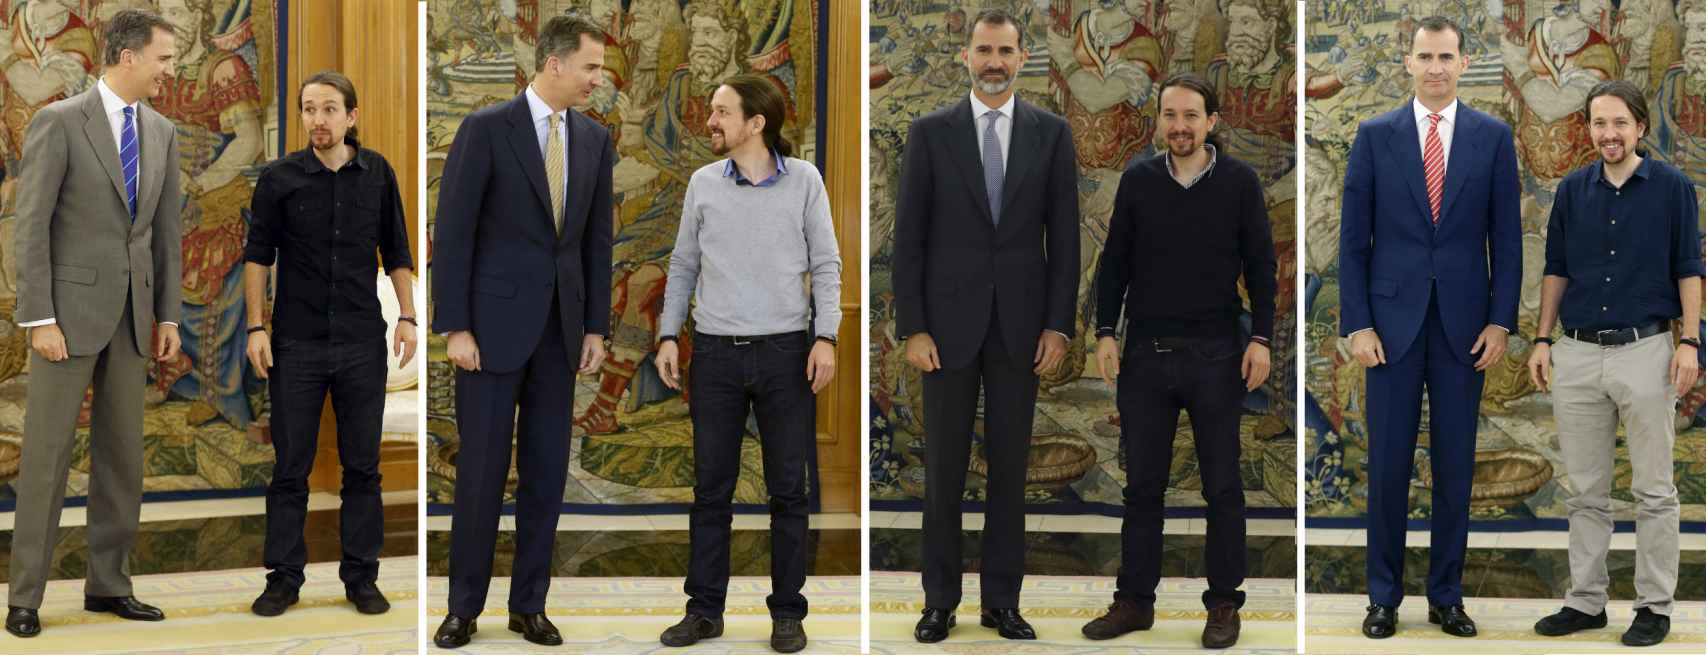 Pablo Iglesias no ha lucido chaqueta ni corbata en sus audiencias con el rey Felipe.